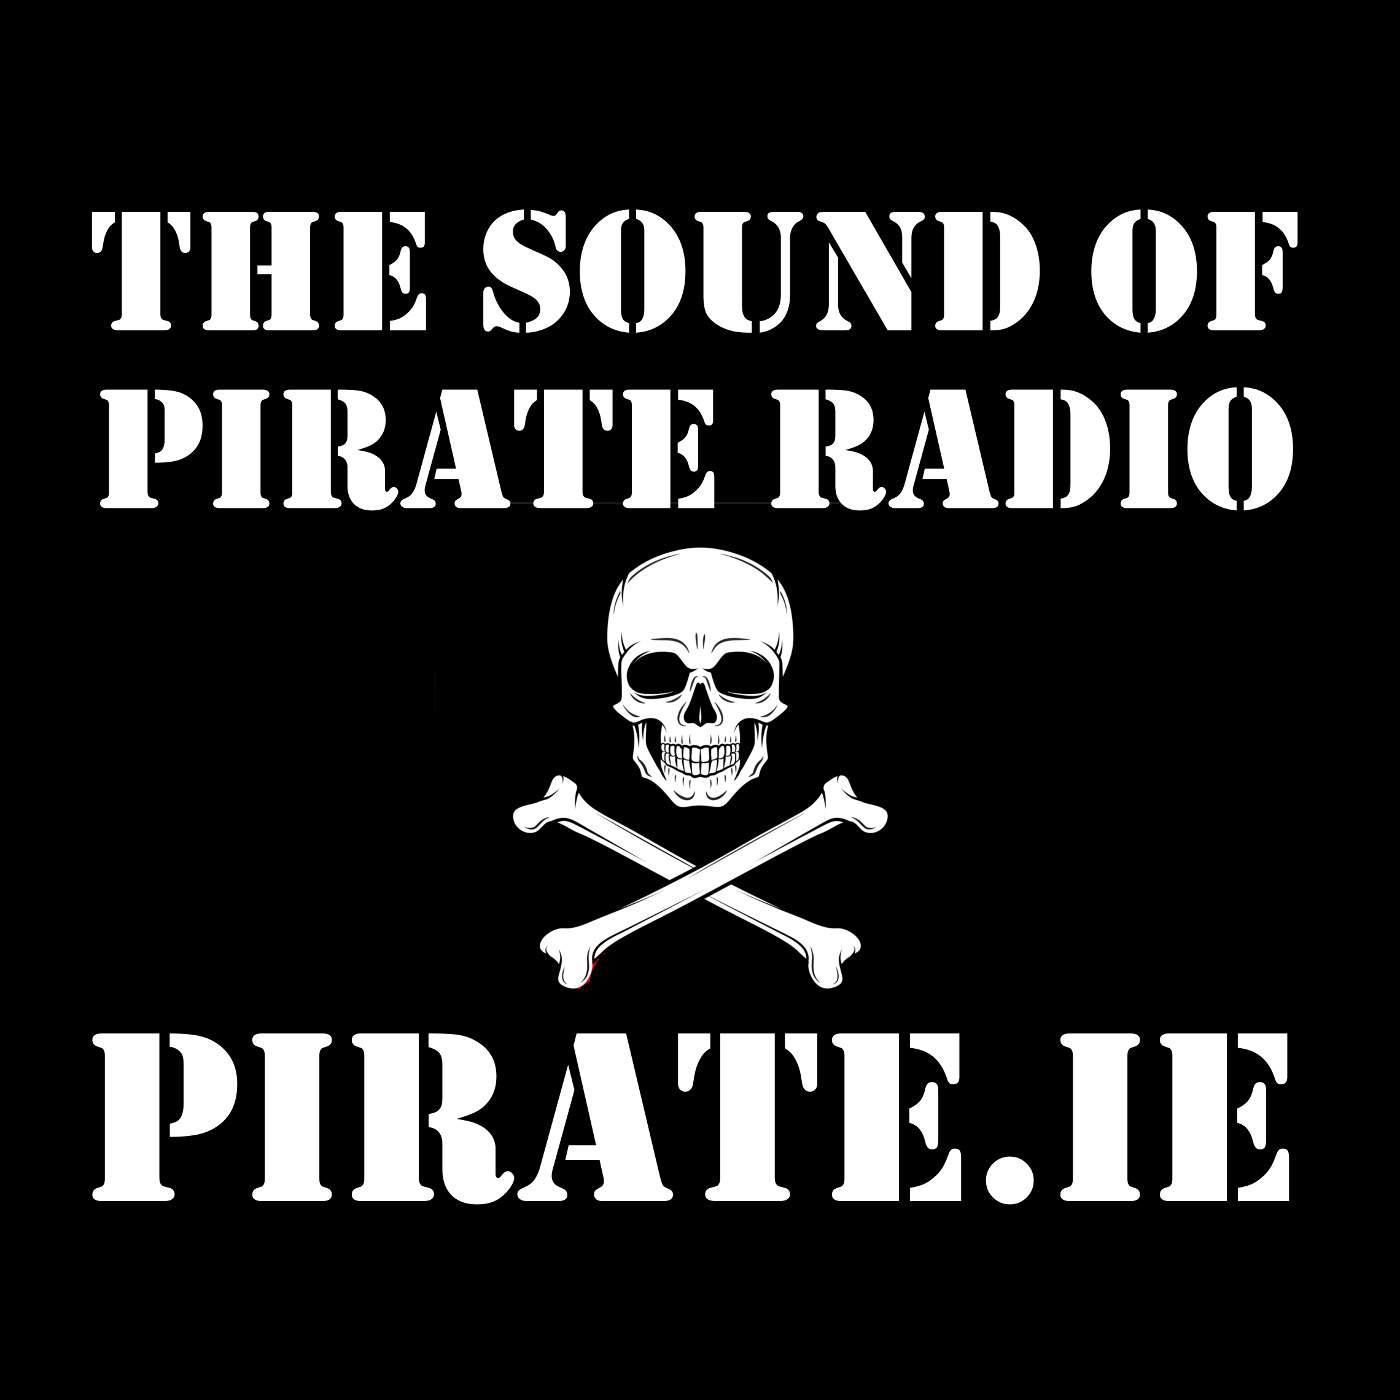 Irish Pirate Radio Audio Archive